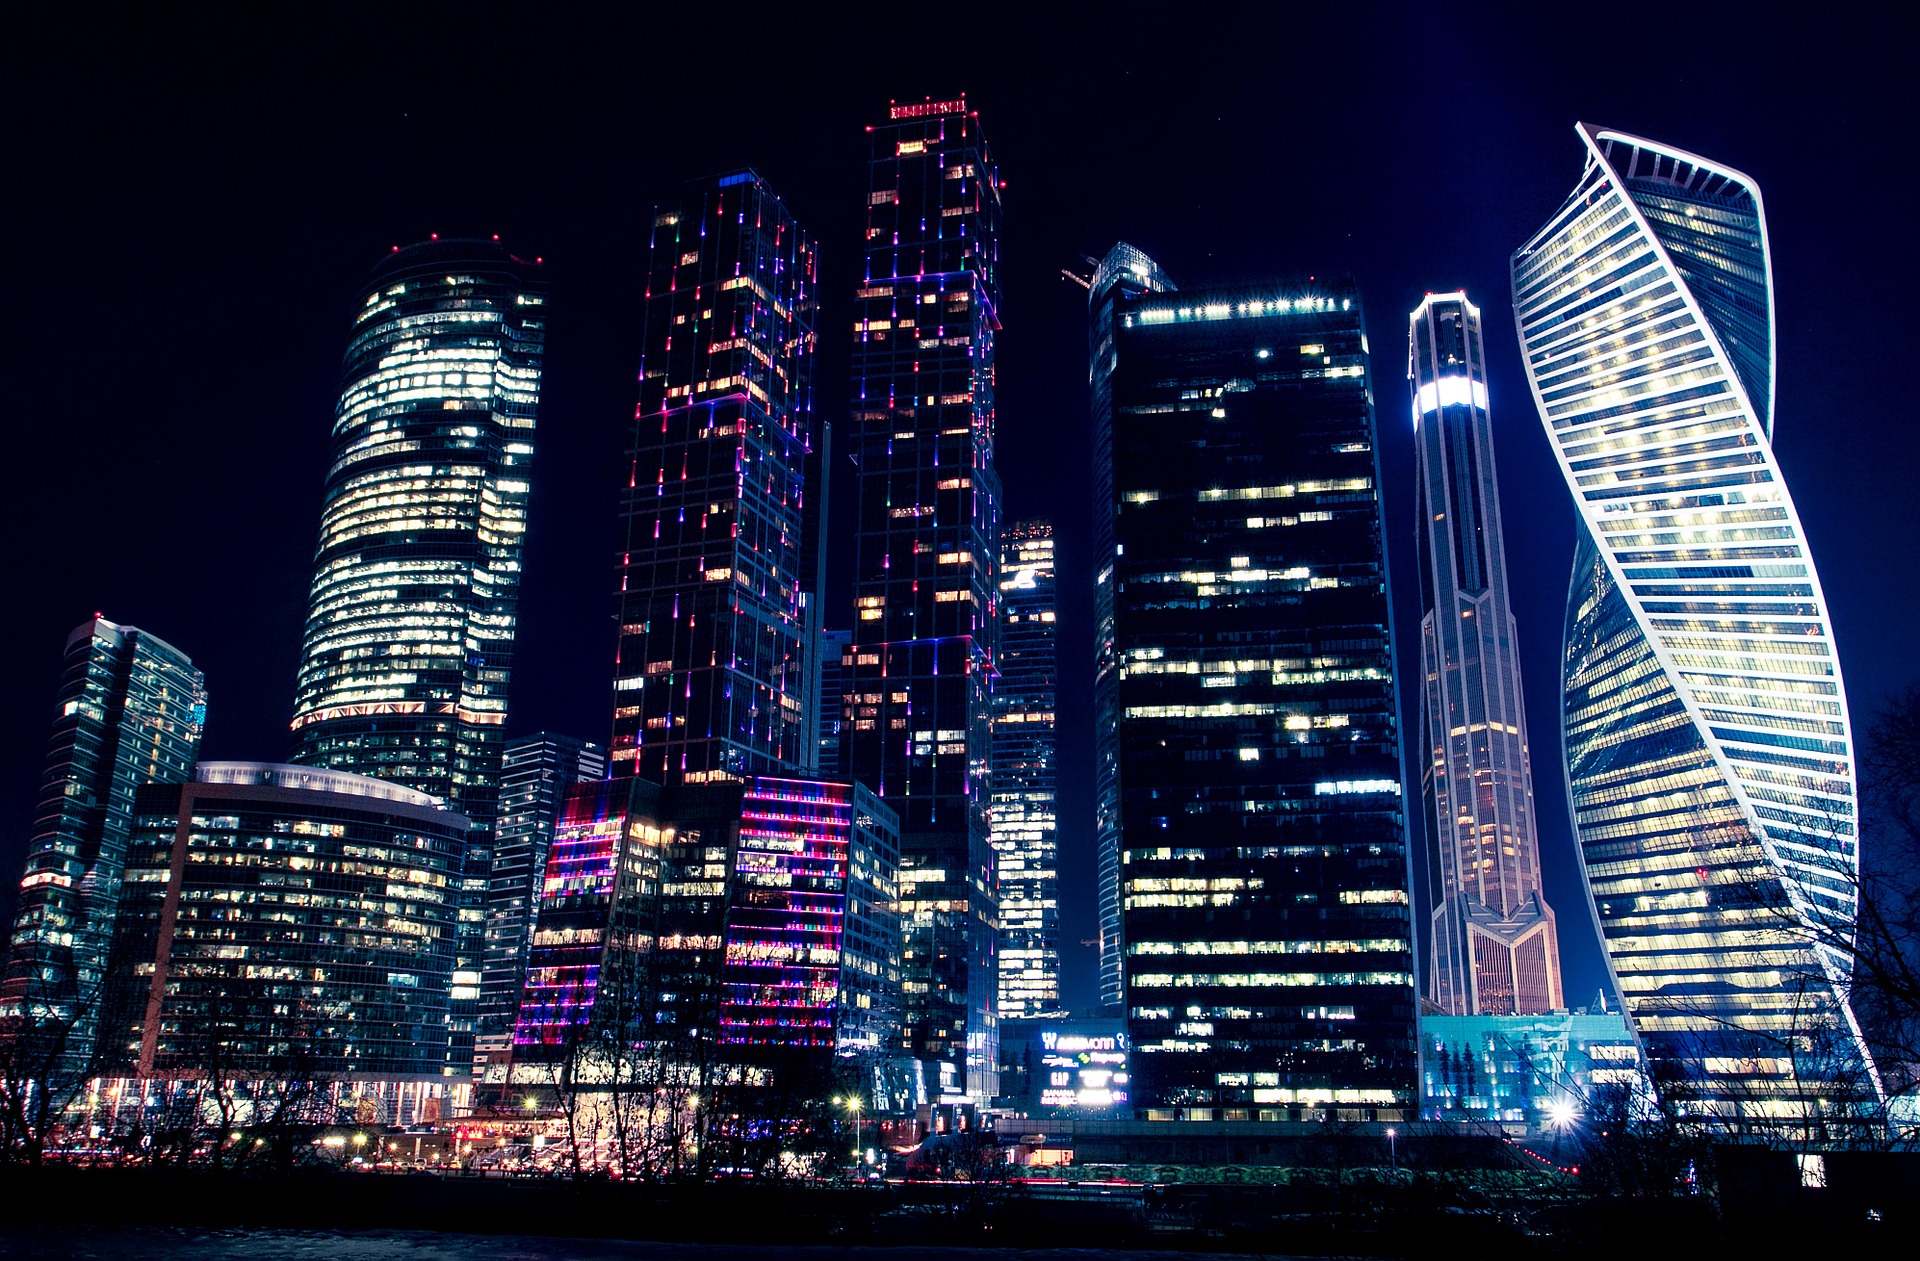 Архсовет одобрил проект небоскреба, который станет самым высоким в Москве - фото 1